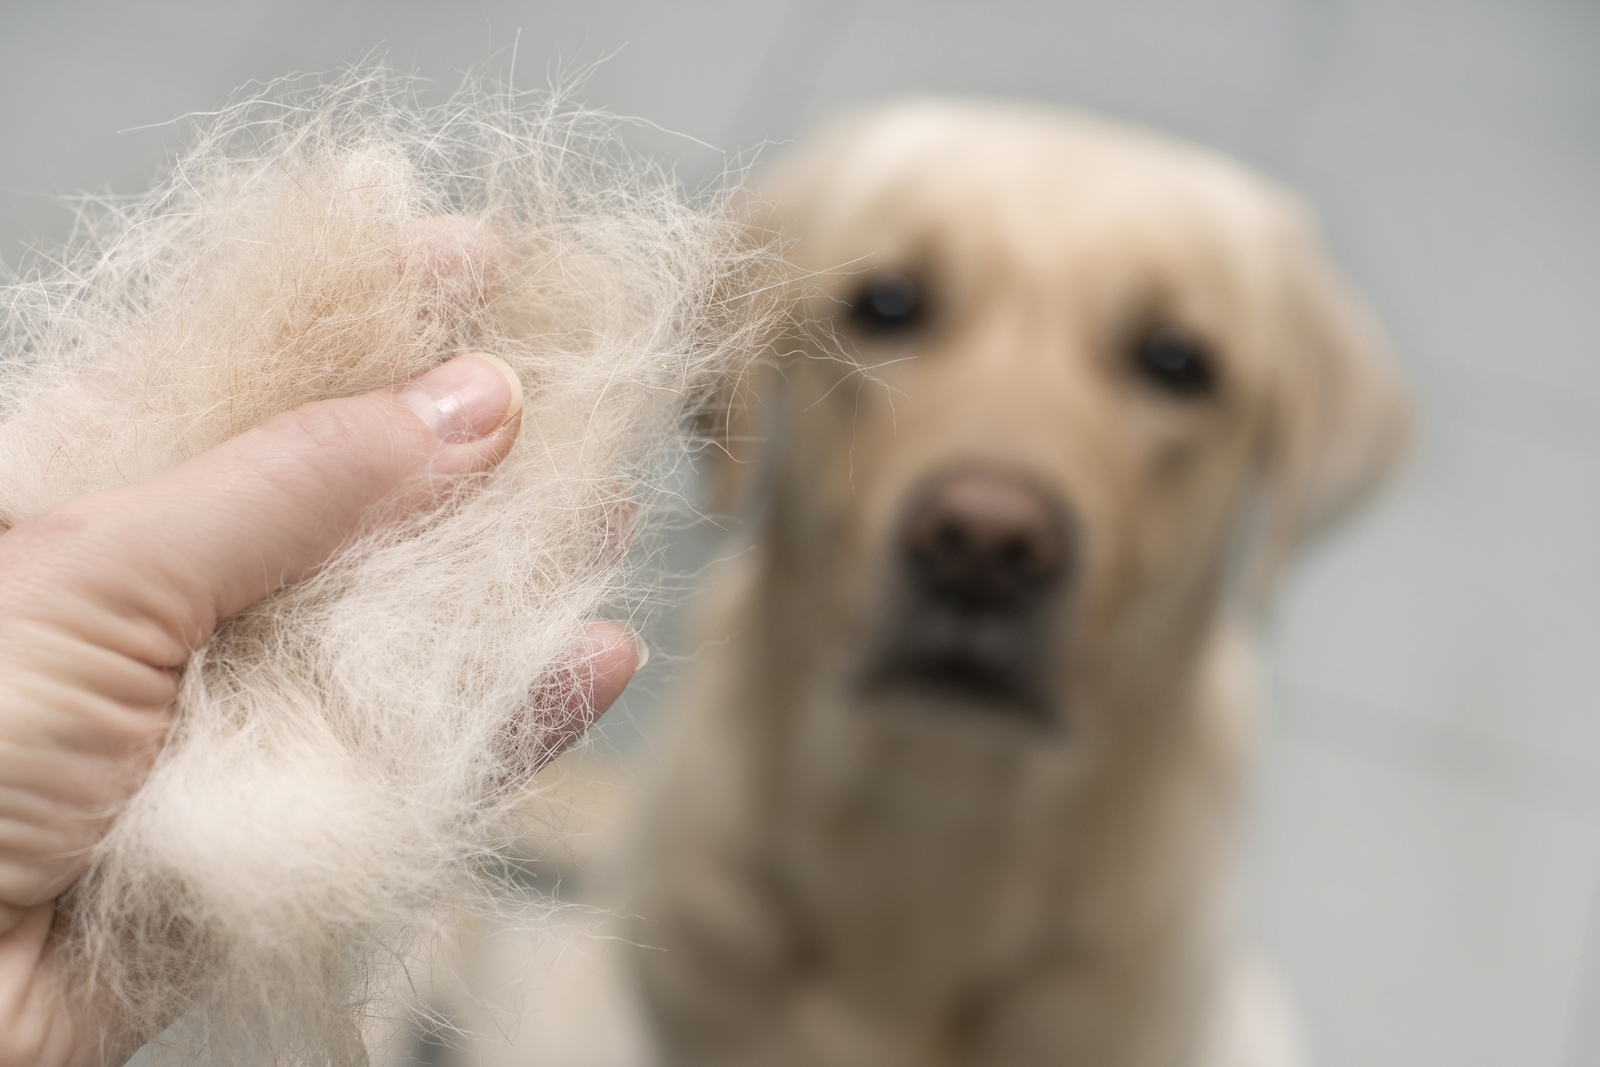 Dog wool close up. Concept of animal molting
Eine Hand hält Fell von einem Golden Retriever.